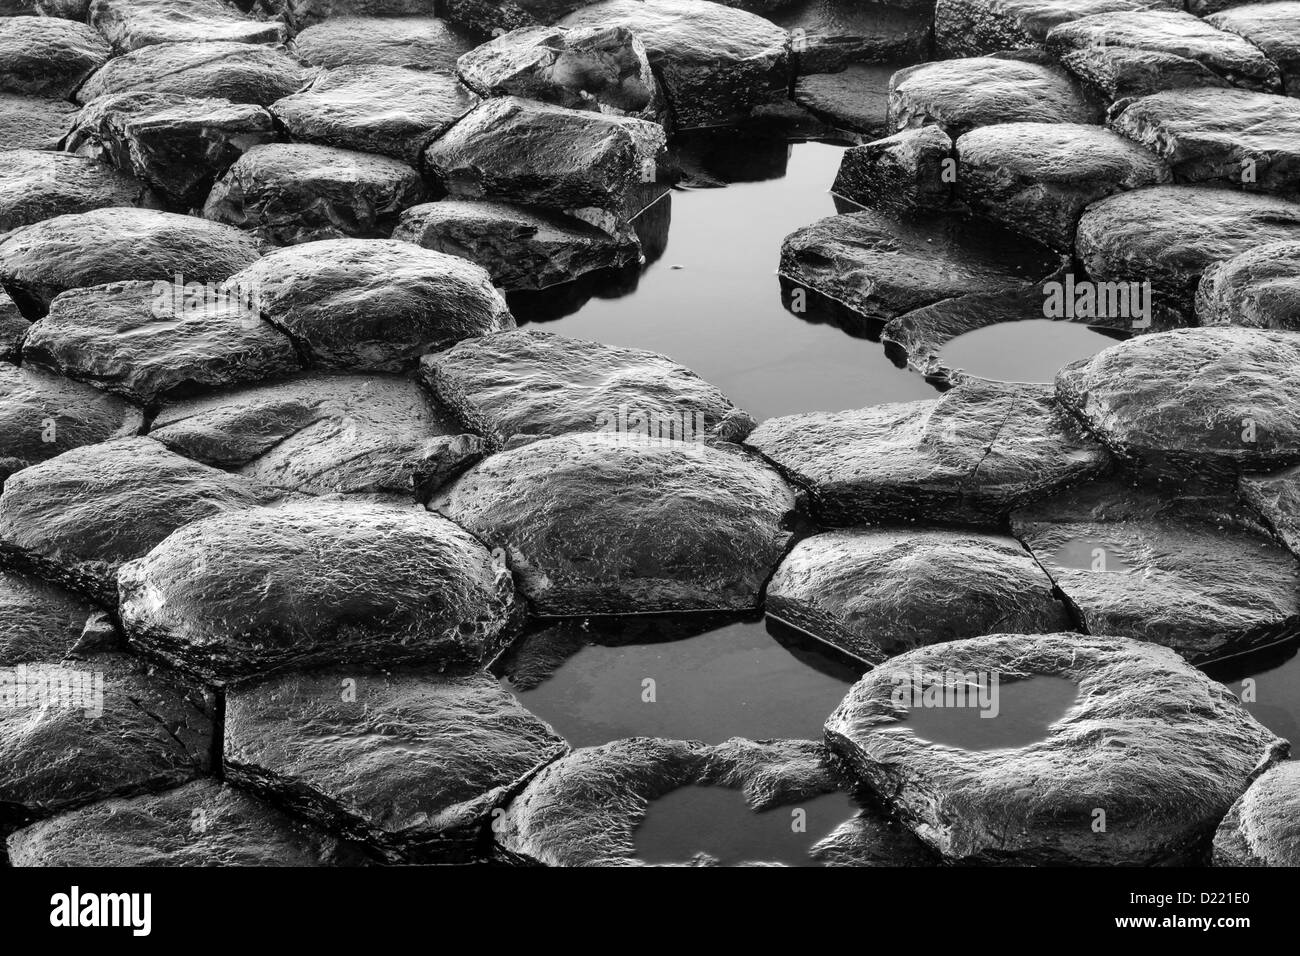 Les détails de la texture monochrome du modèle hexagonal des roches basaltiques de la célèbre Chaussée des Géants, en Irlande du Nord. Banque D'Images